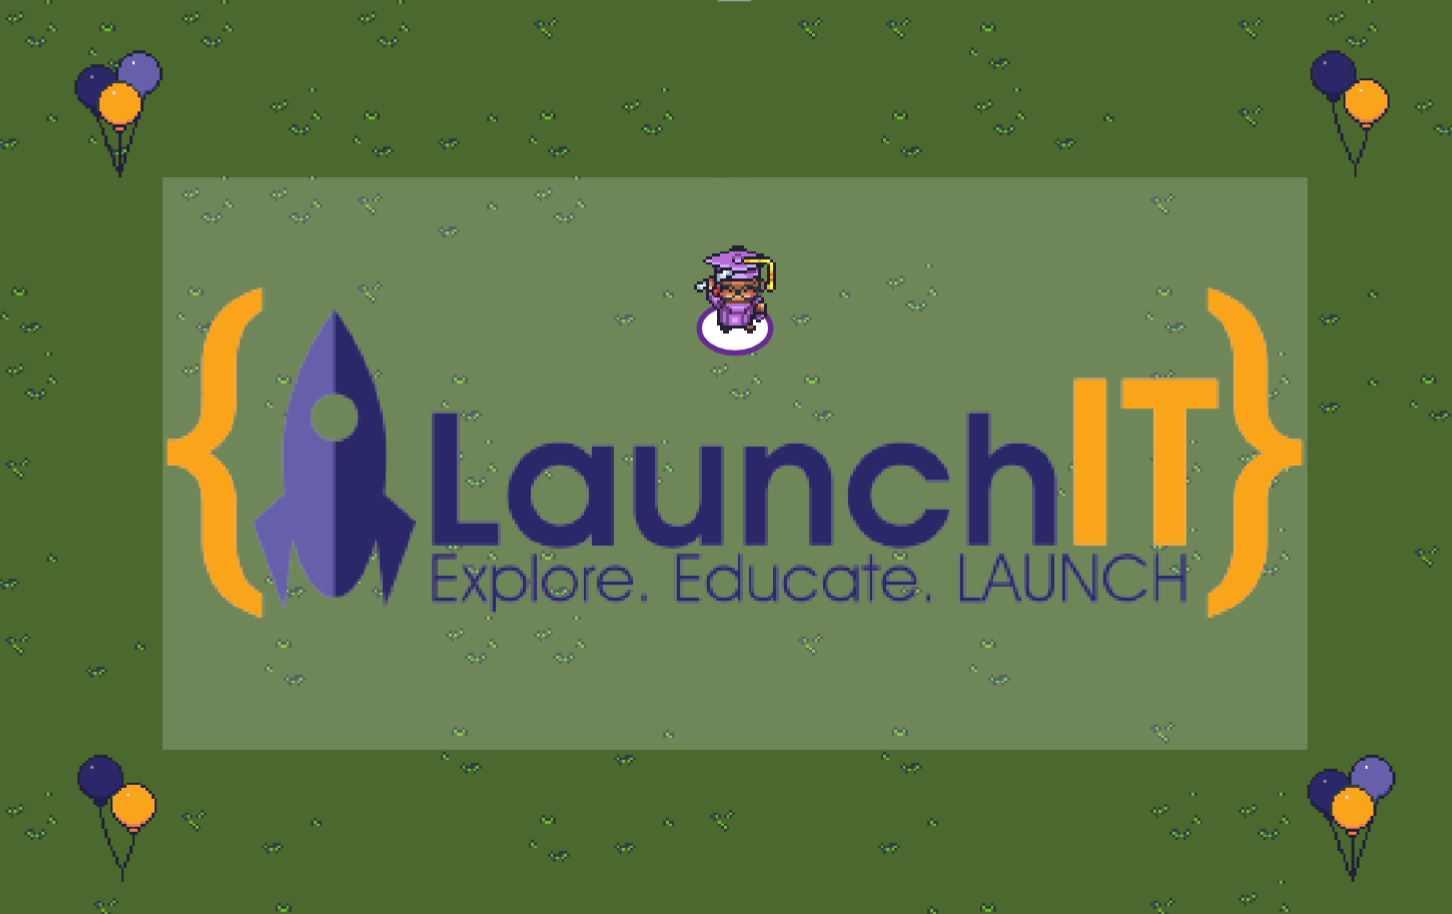 LaunchIT - Explore. Educate. LAUNCH